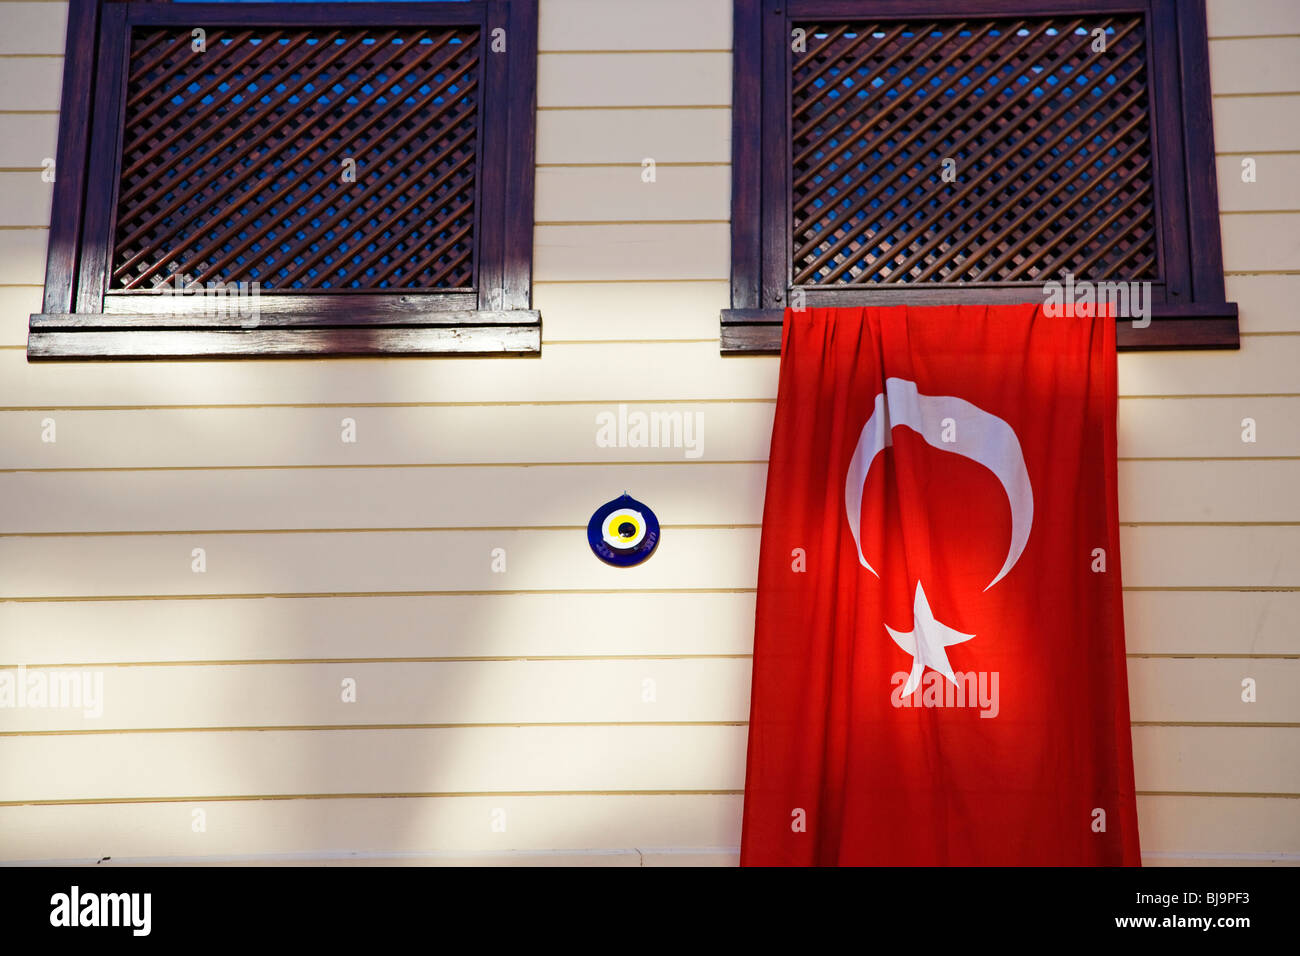 Türkische Flagge hängt aus einem Fenster Haus feiert Tag der Republik. Stadtteil Sultanahmet, Istanbul, Türkei Stockfoto